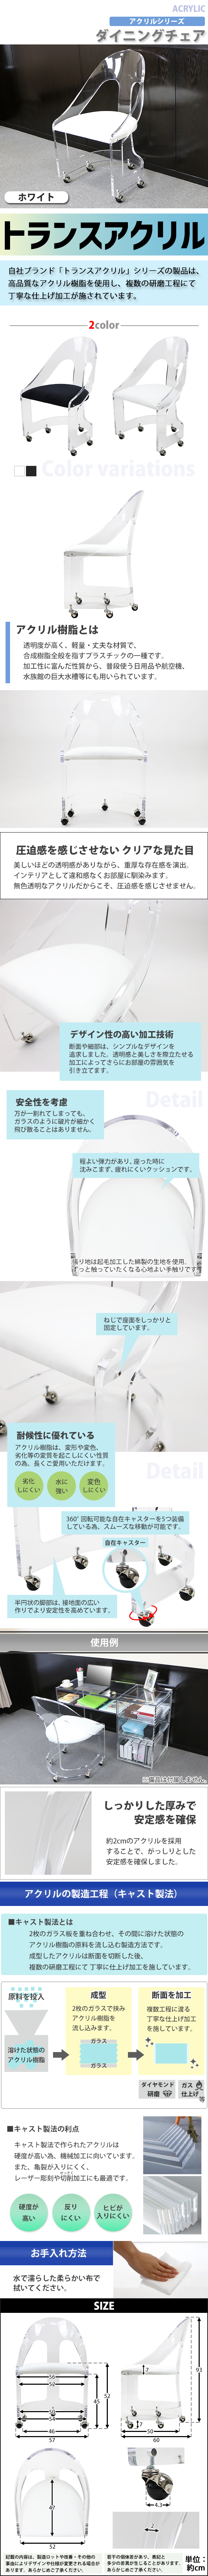 【お得再入荷】送料無料 アクリル ダイニングチェア チェア 椅子 chair ホワイト キャスター付き クリア スケルトン 無色透明 インテリア 家具 ダイニングチェア